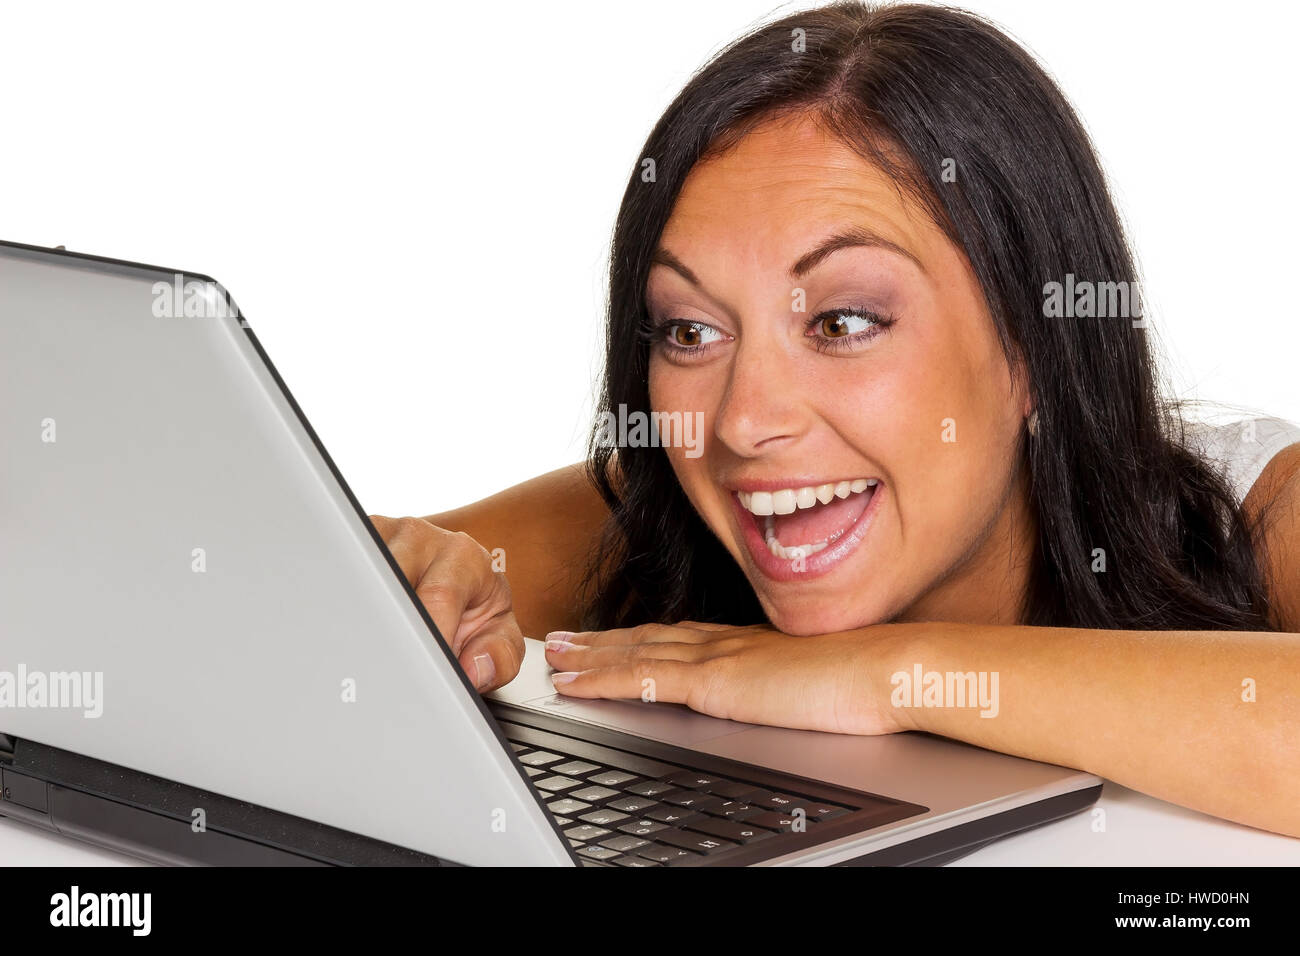 Una giovane donna con un computer portatile. Foto di simbolo per la comunicazione e media moderni., Eine junge Frau Mit einem computer laptop. Foto di simbolo f'r Kom Foto Stock